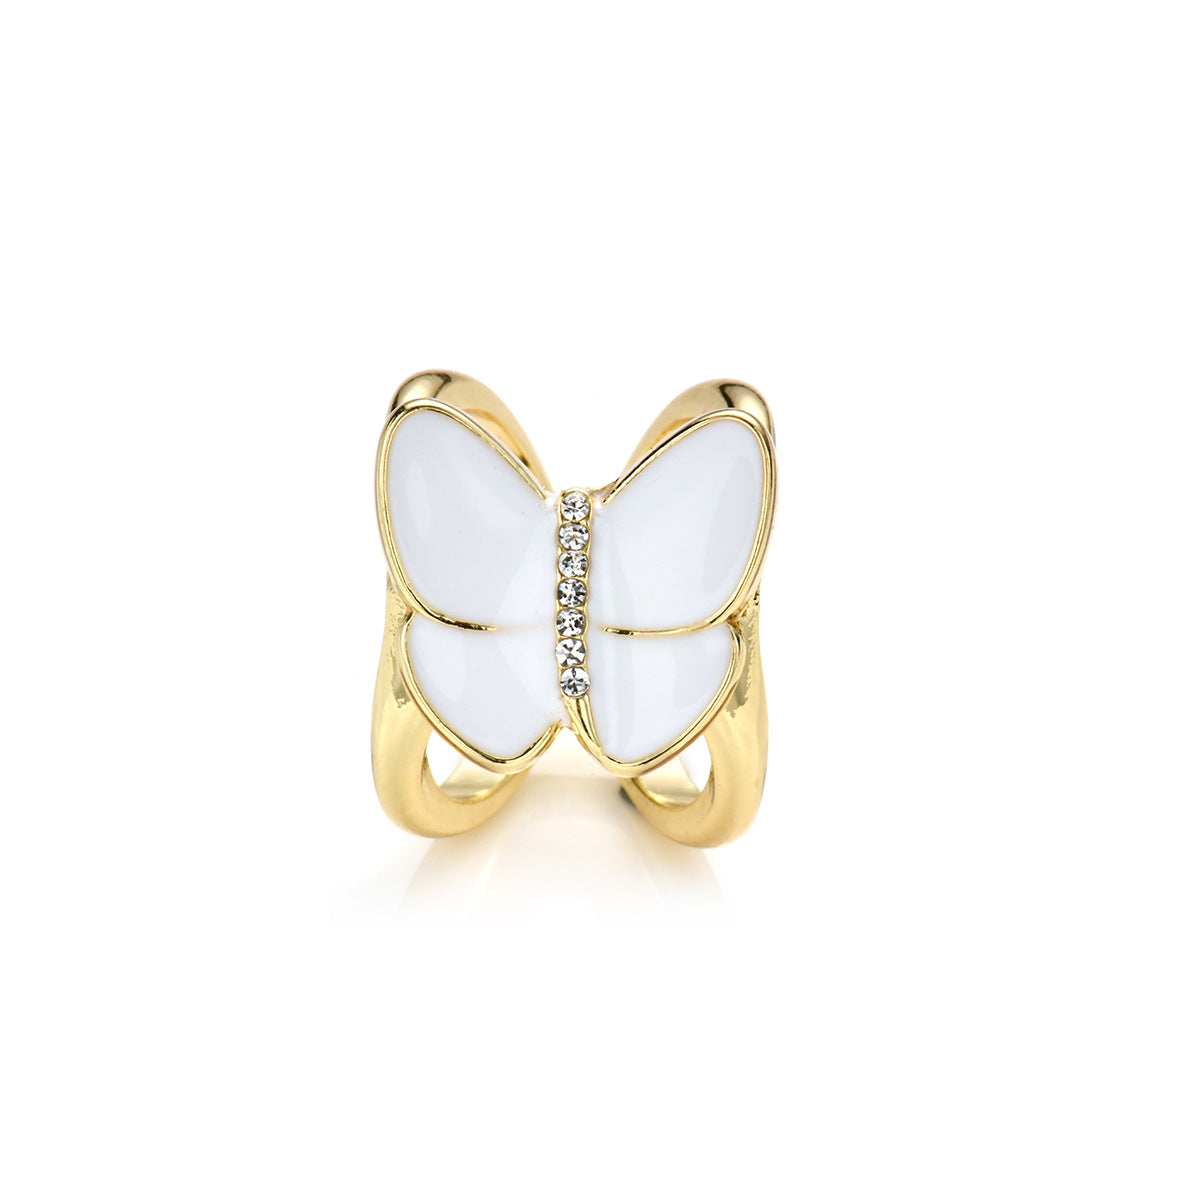 FSASR-006 Butterfly Shape Scarf Ring Buckle